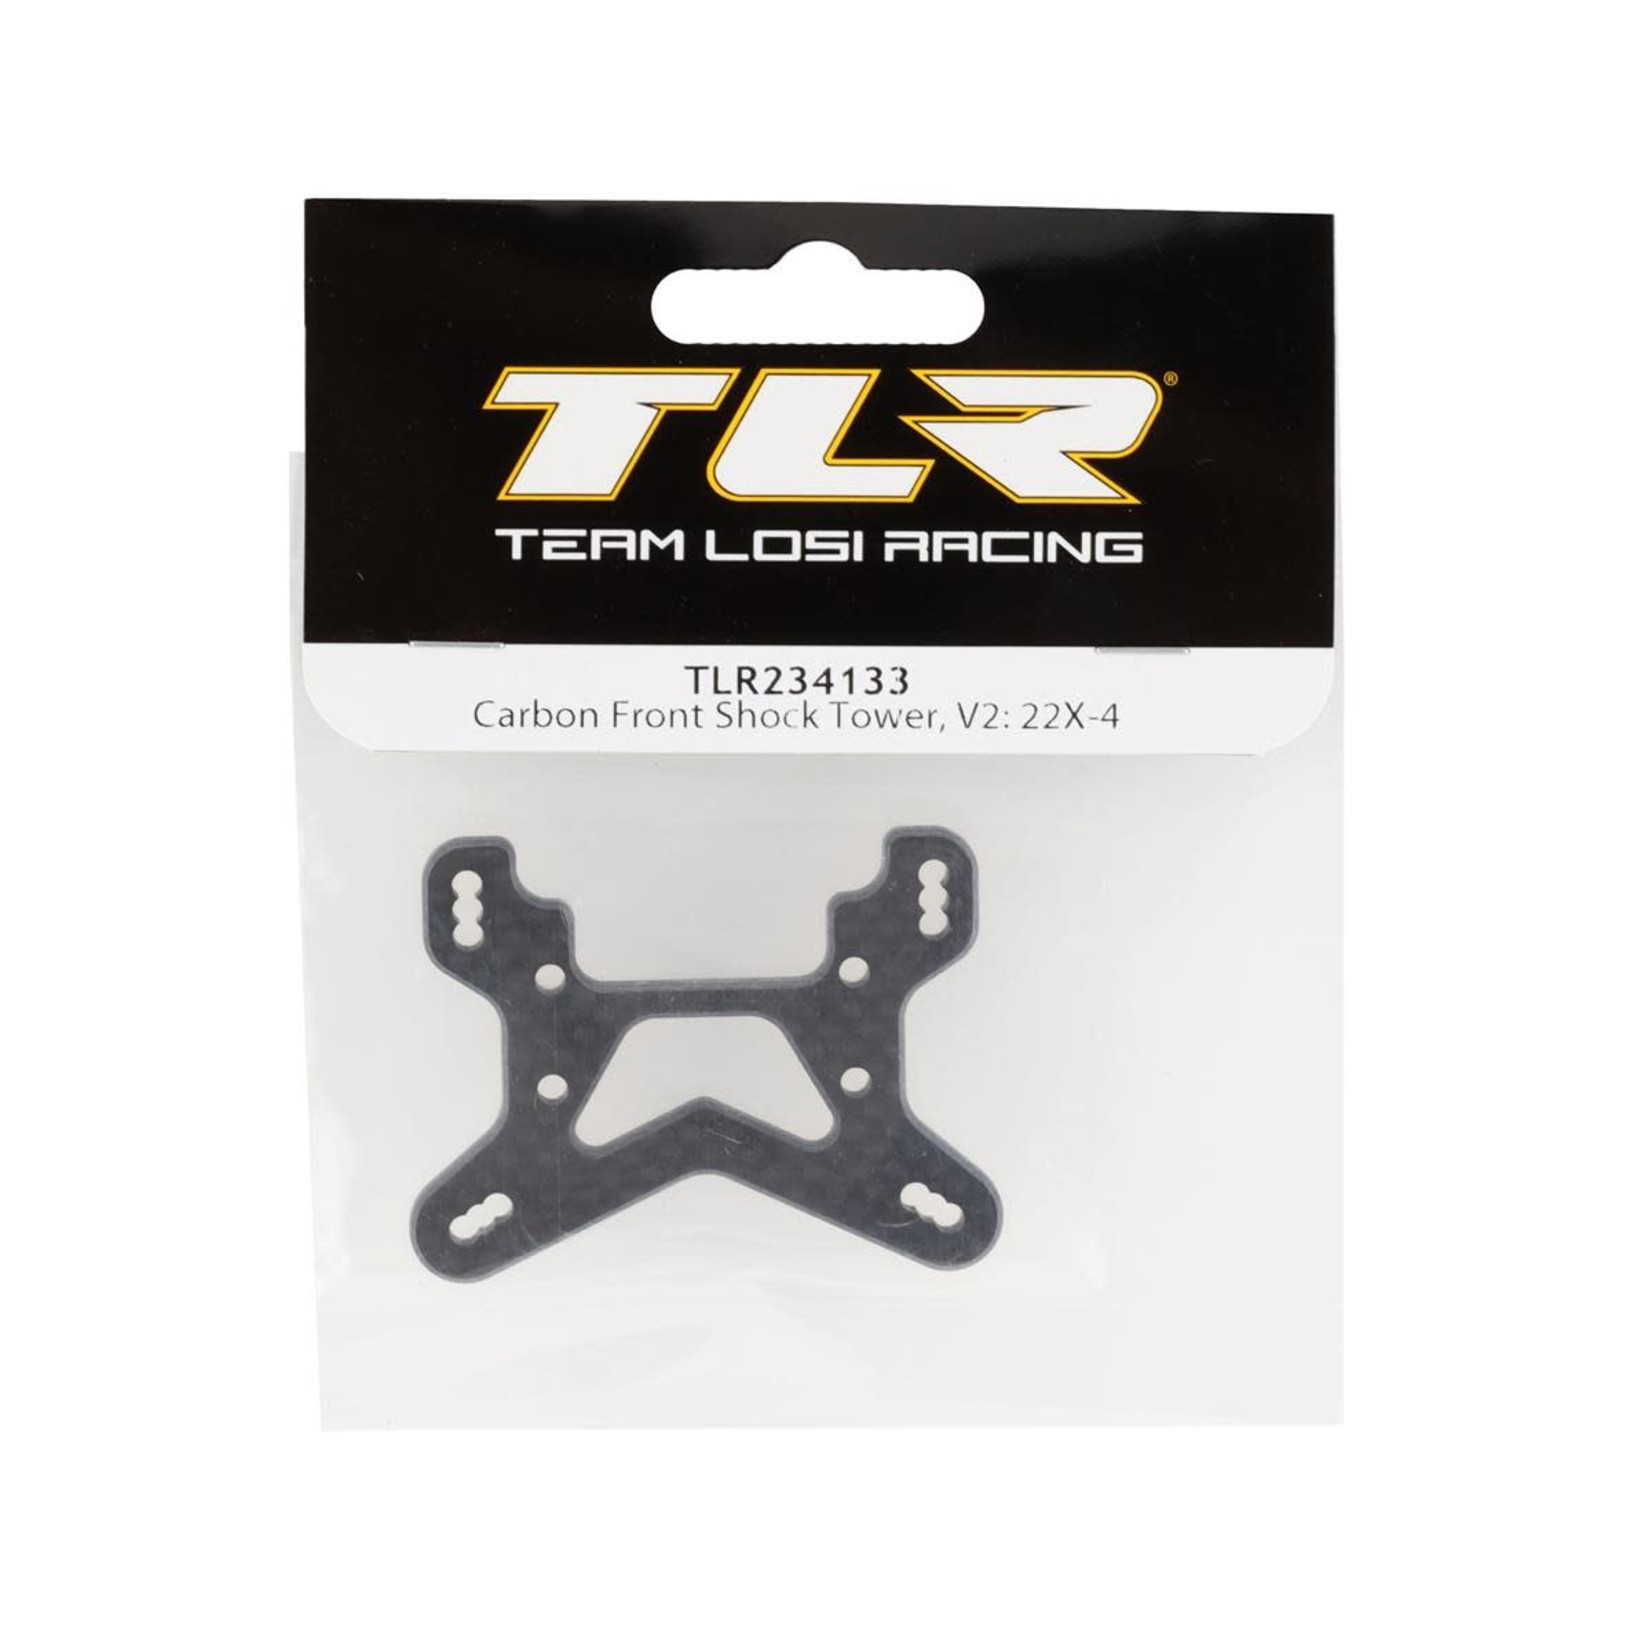 TLR Team Losi Racing 22X-4 Elite V2 Carbon Front Shock Tower #TLR234133